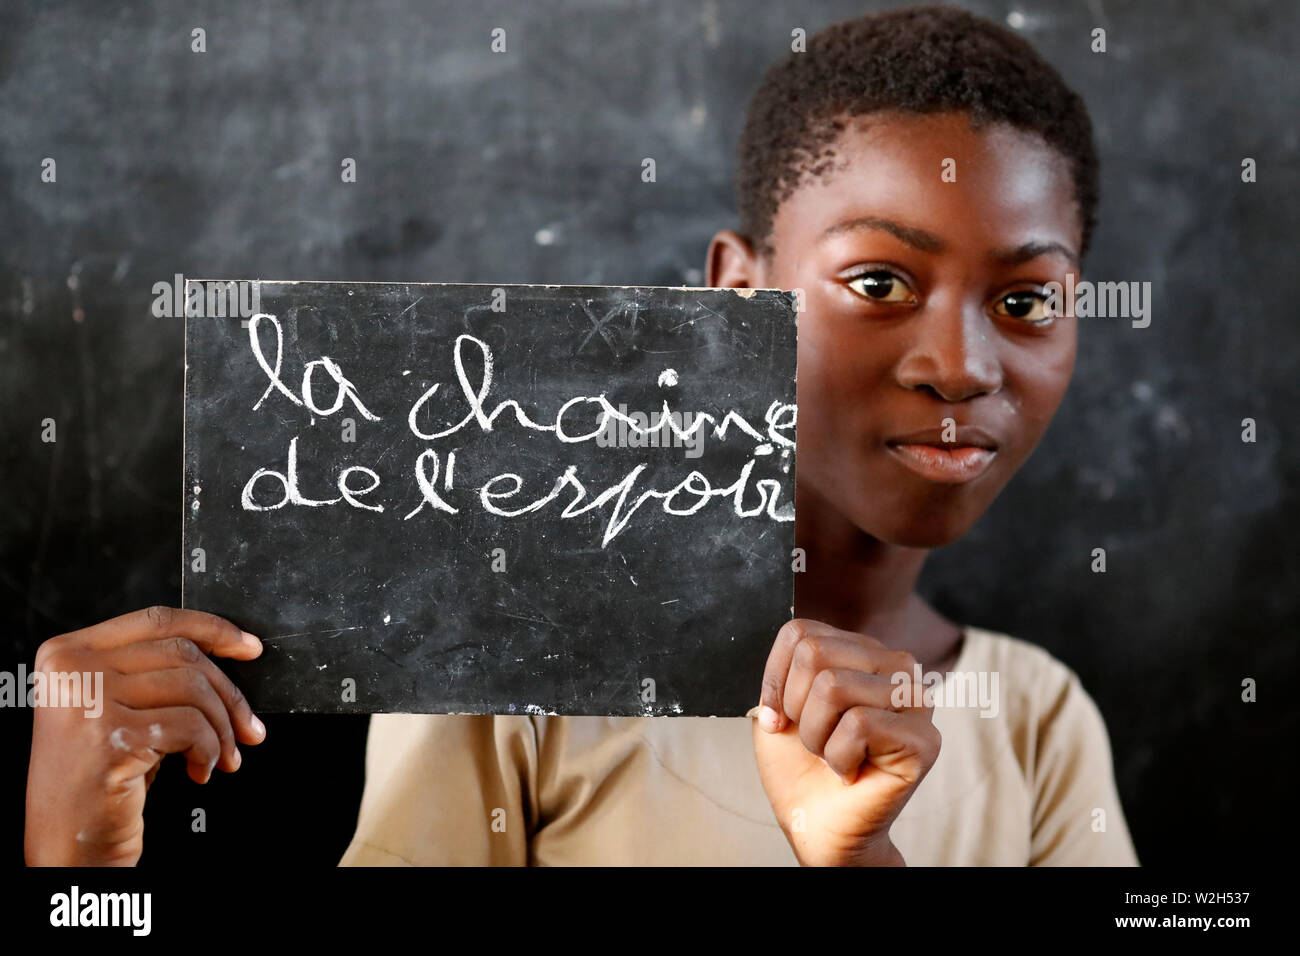 La escuela primaria de África. Los niños patrocinada por la ONG francesa : la Chaine de l'Espoir. ( Cadena de Esperanza ). Lome. Togo. Foto de stock